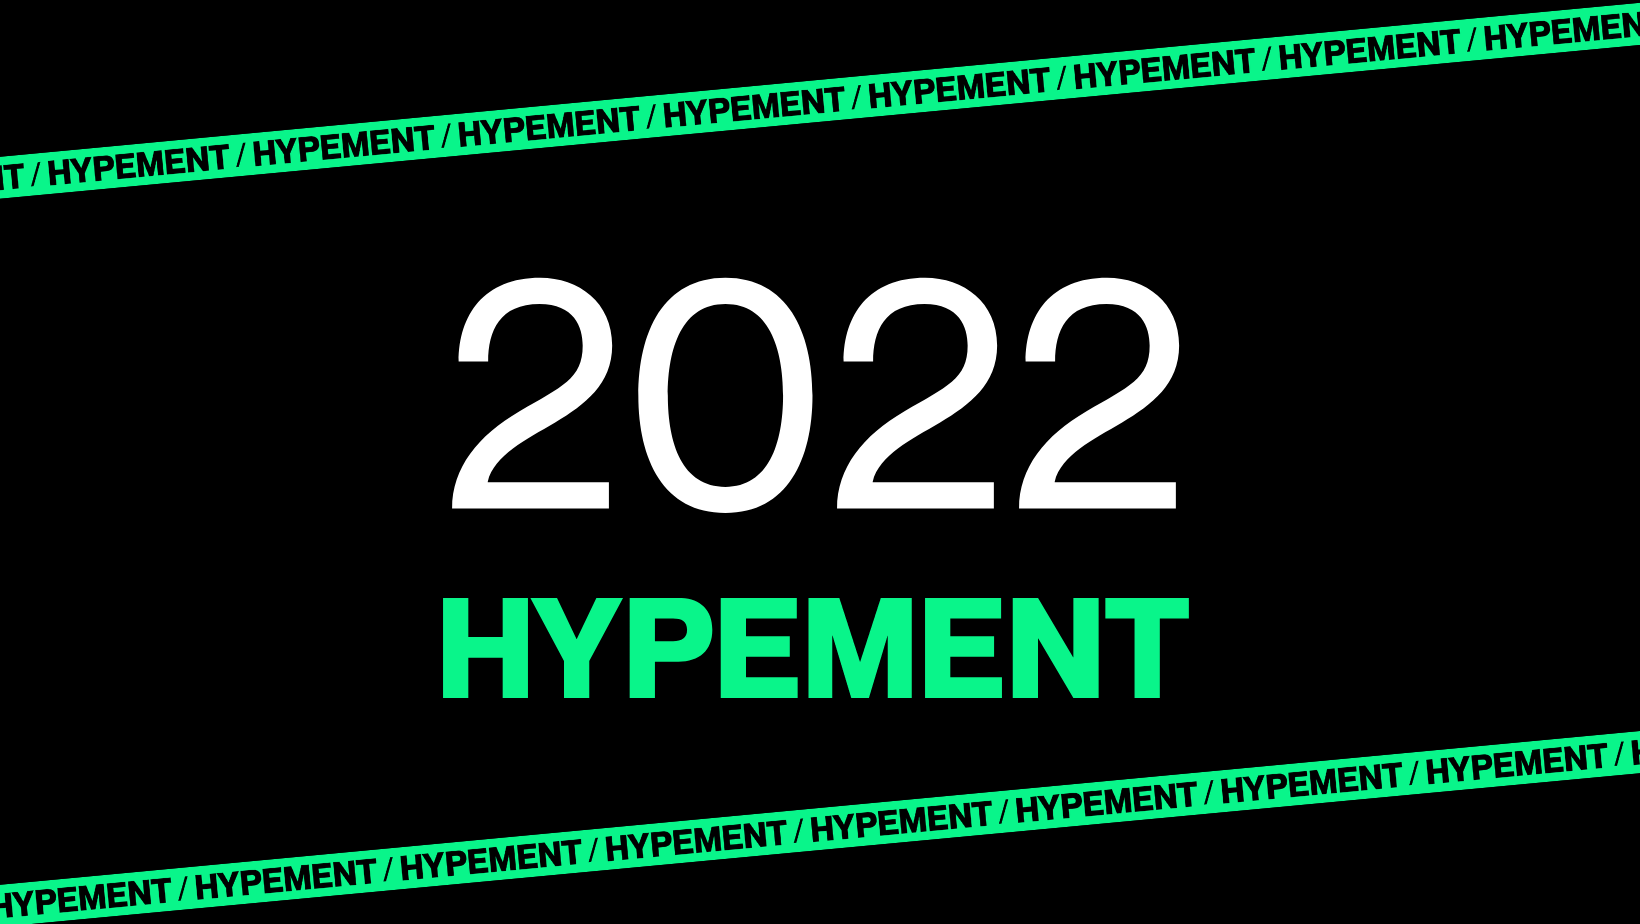 Hypementin nousukiitoinen vuosi 2022.